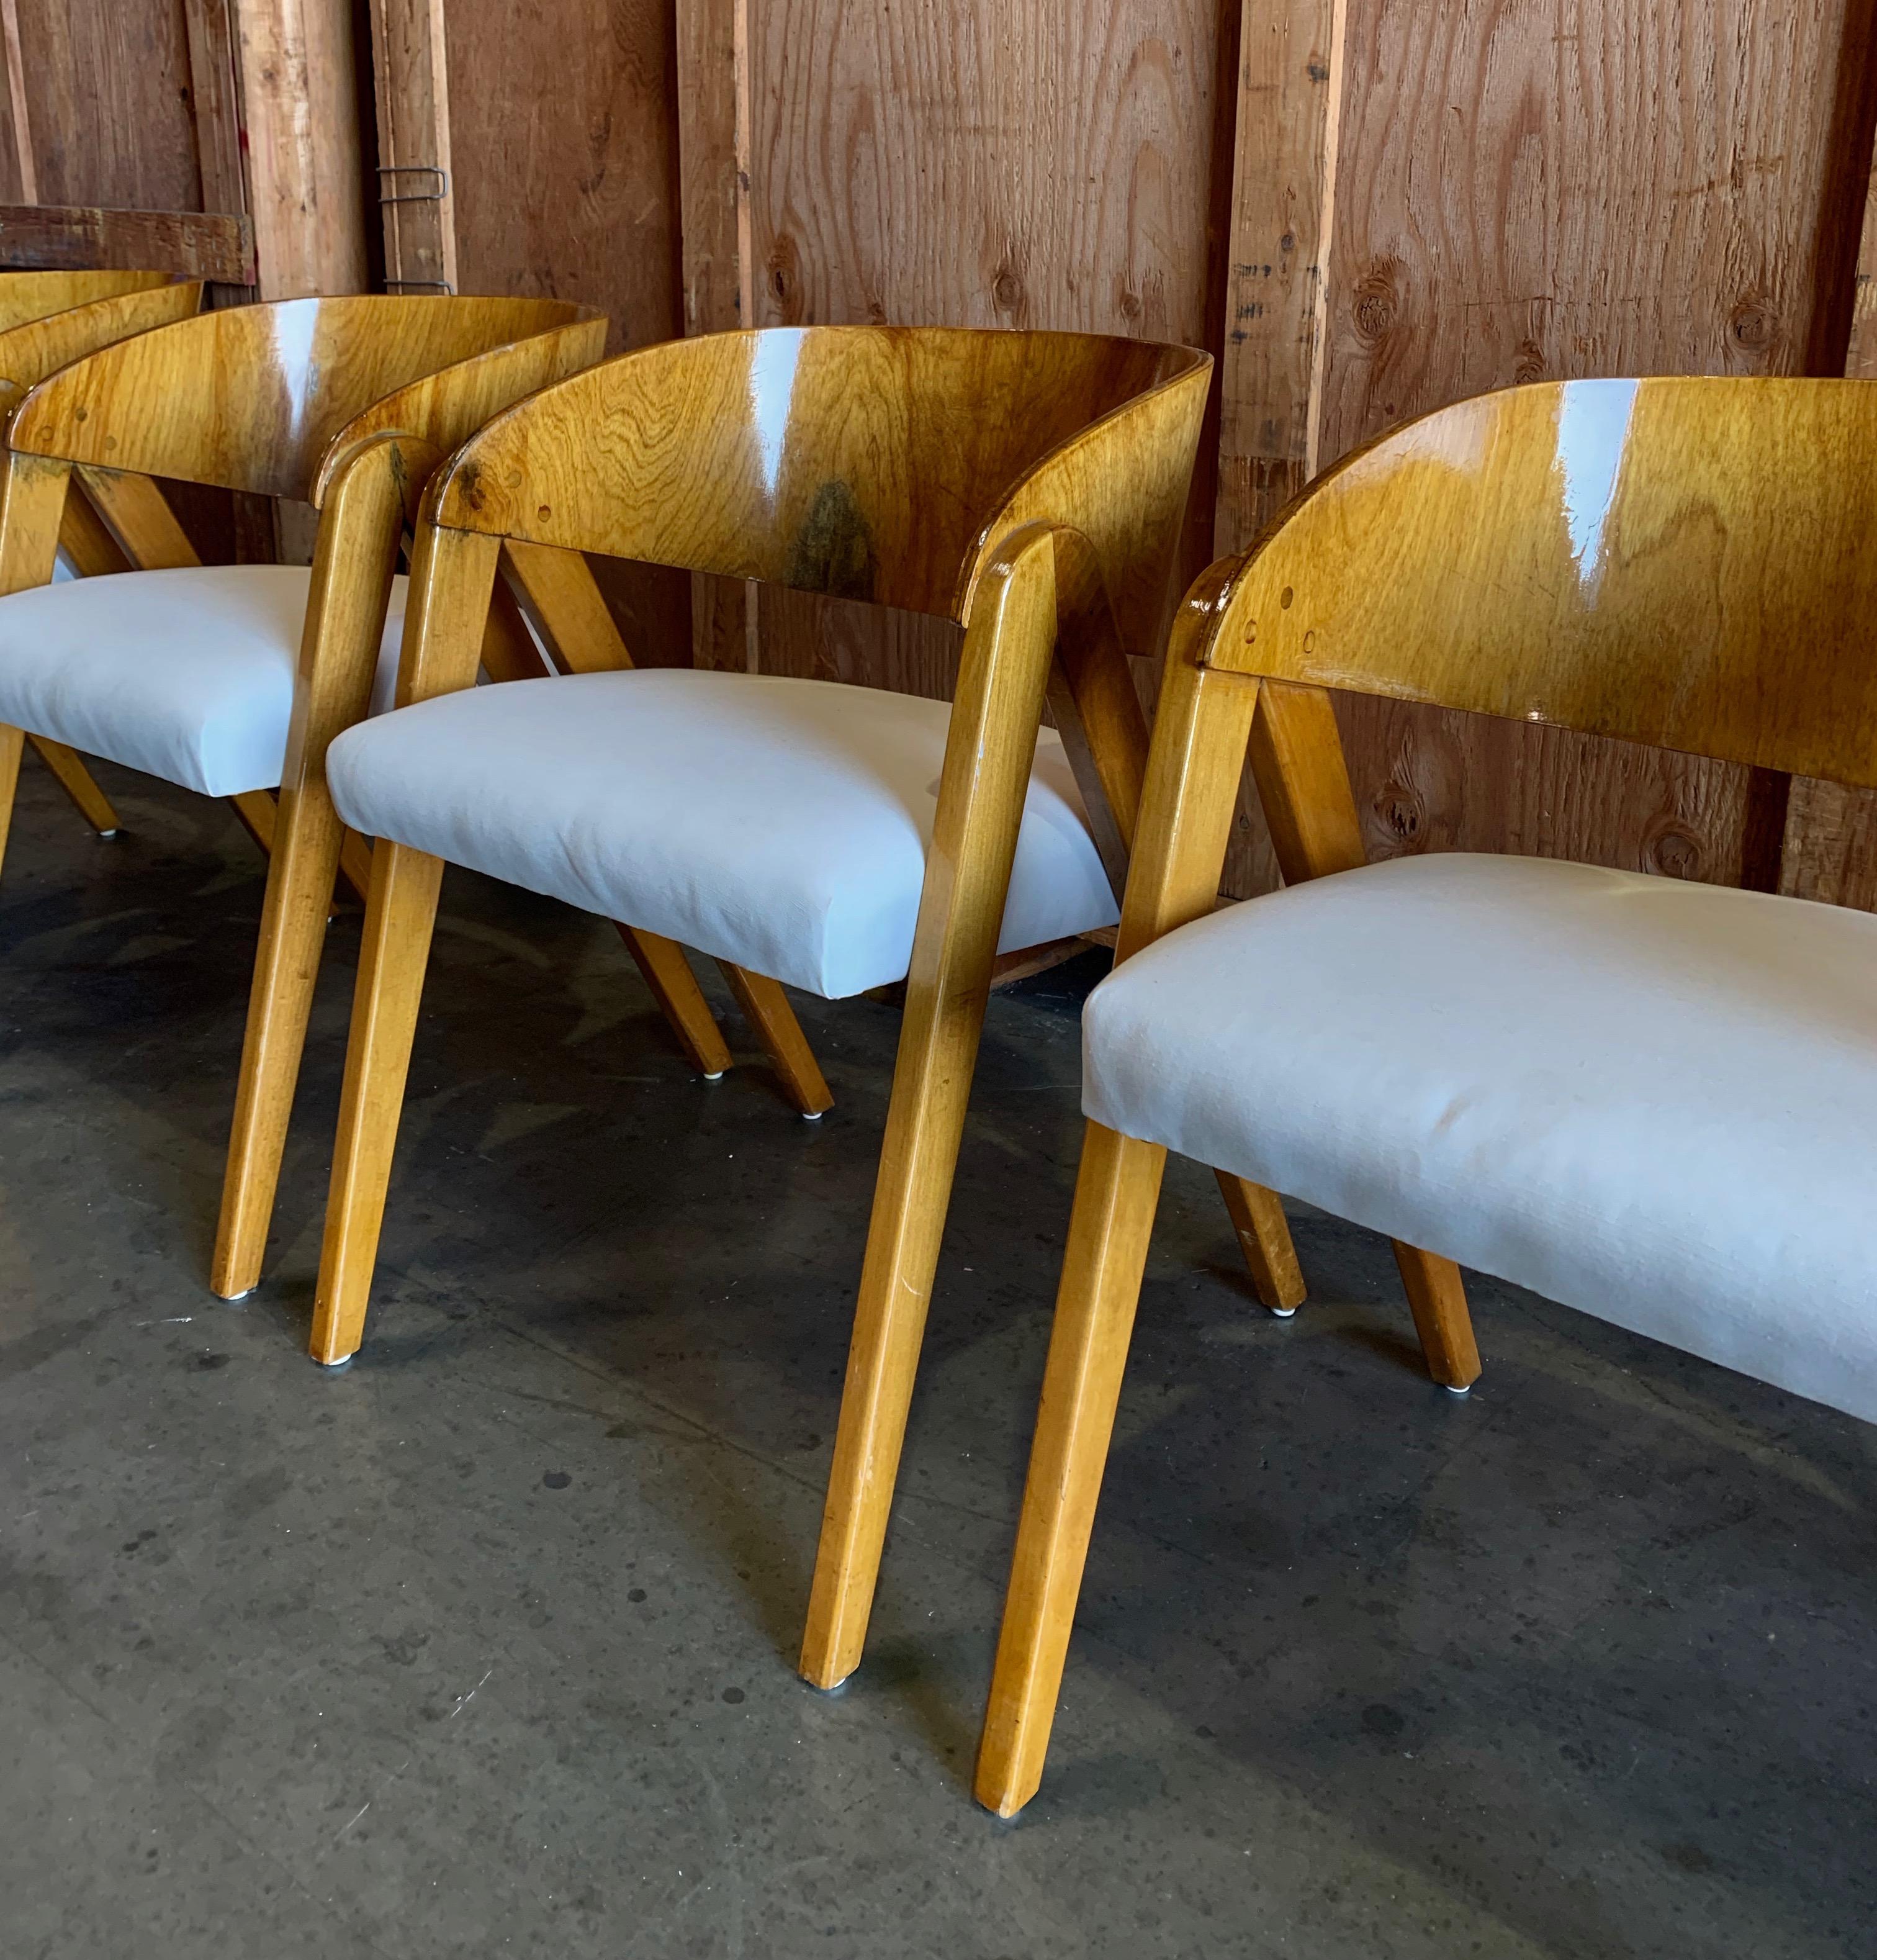 4 epische italienische Esszimmerstühle mit neu gepolsterten Leinen-Sitzflächen, die sich durch ihr Fassrücken-Design und die Massivholz-Details perfekt für ein Frühstückszimmer, einen Kartentisch oder ein Büro eignen.